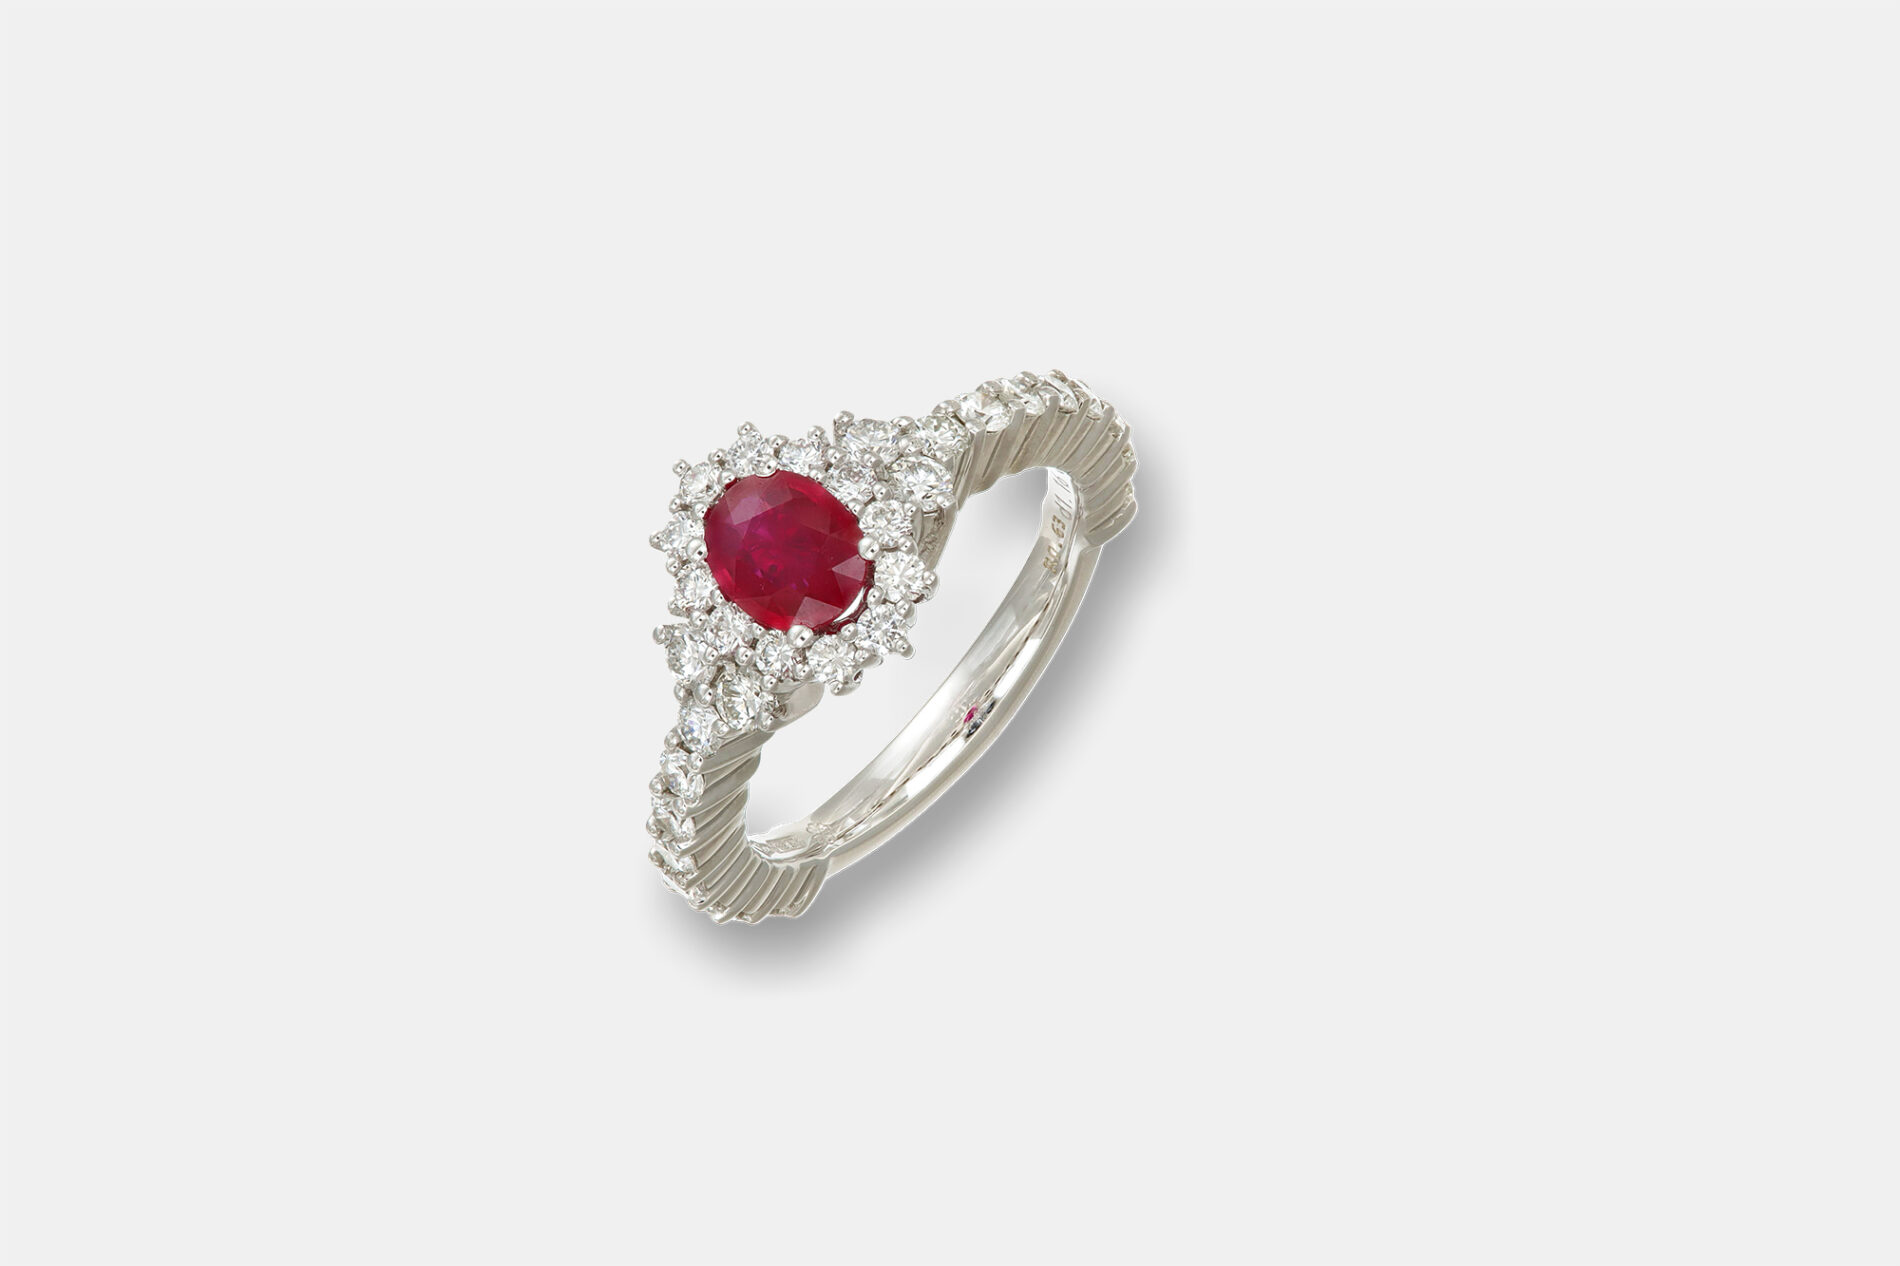 Anello rubino white Crown Prestige - Gioielleria Casavola di Noci - idee proposta di matrimonio - regalo per lei